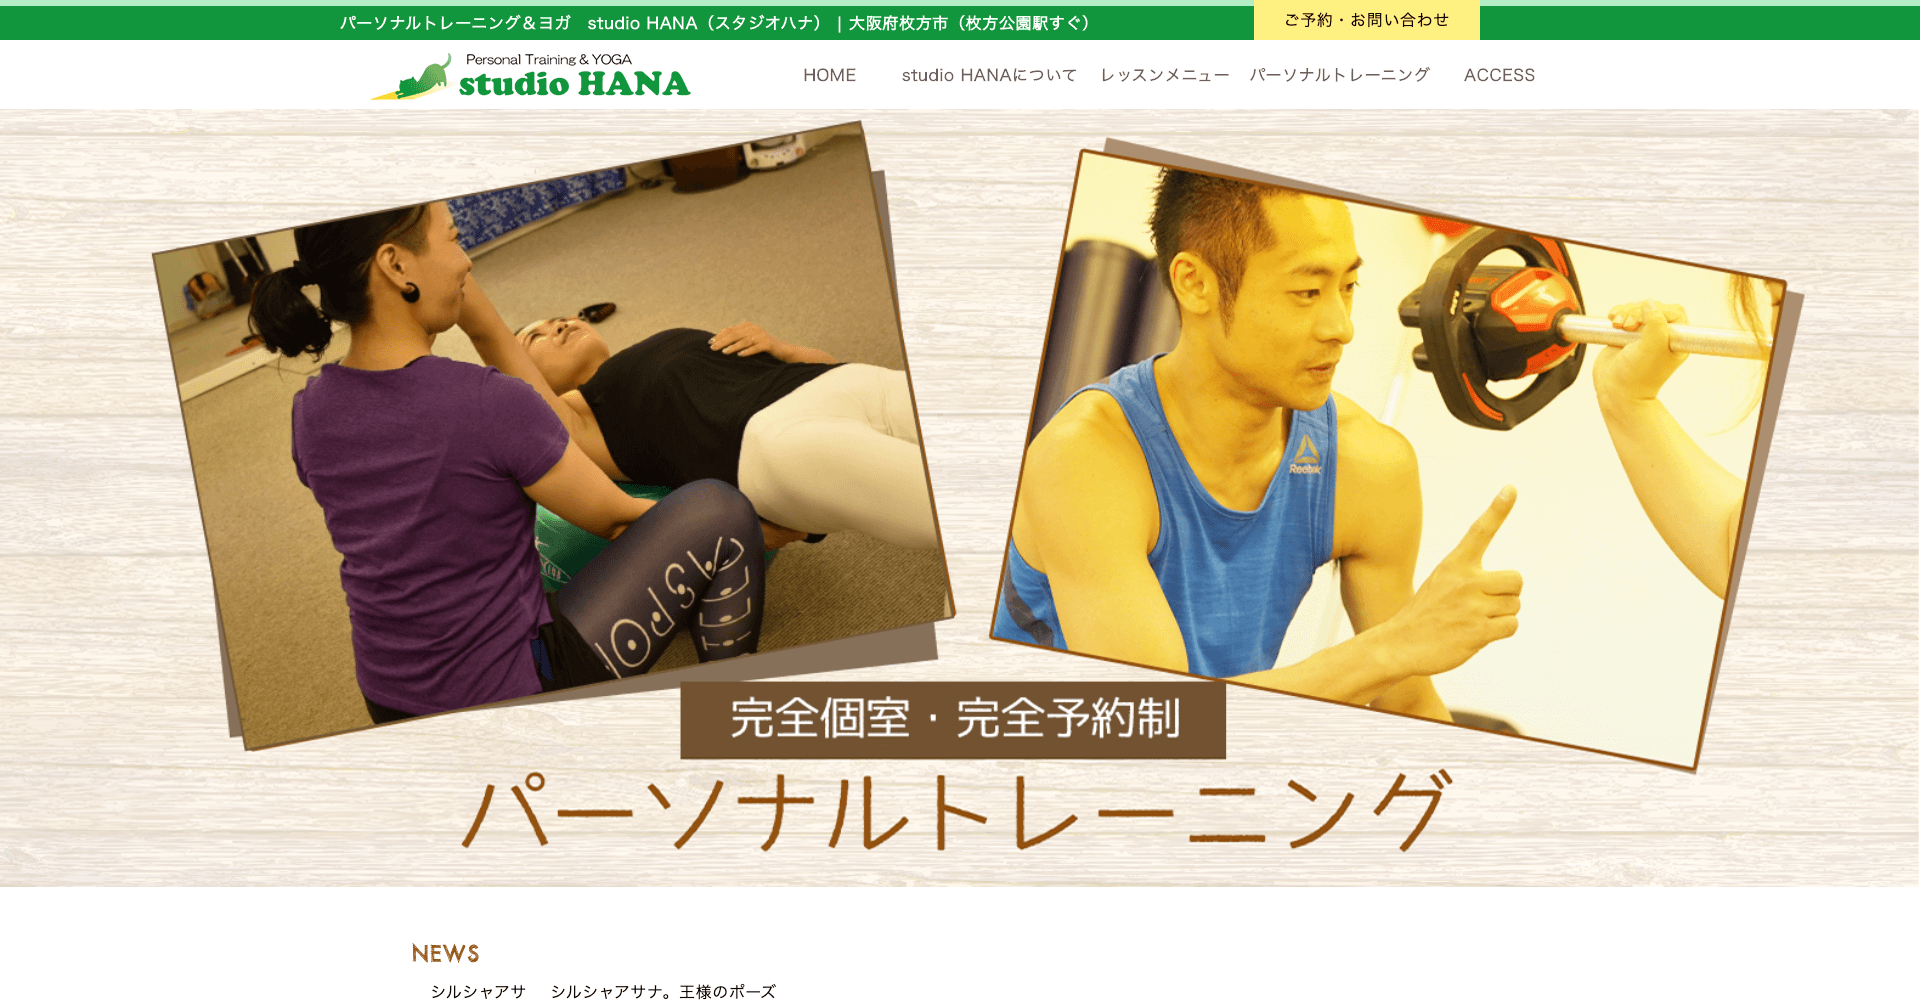 パーソナルトレーニング&ヨガ studio HANA(ハナ)